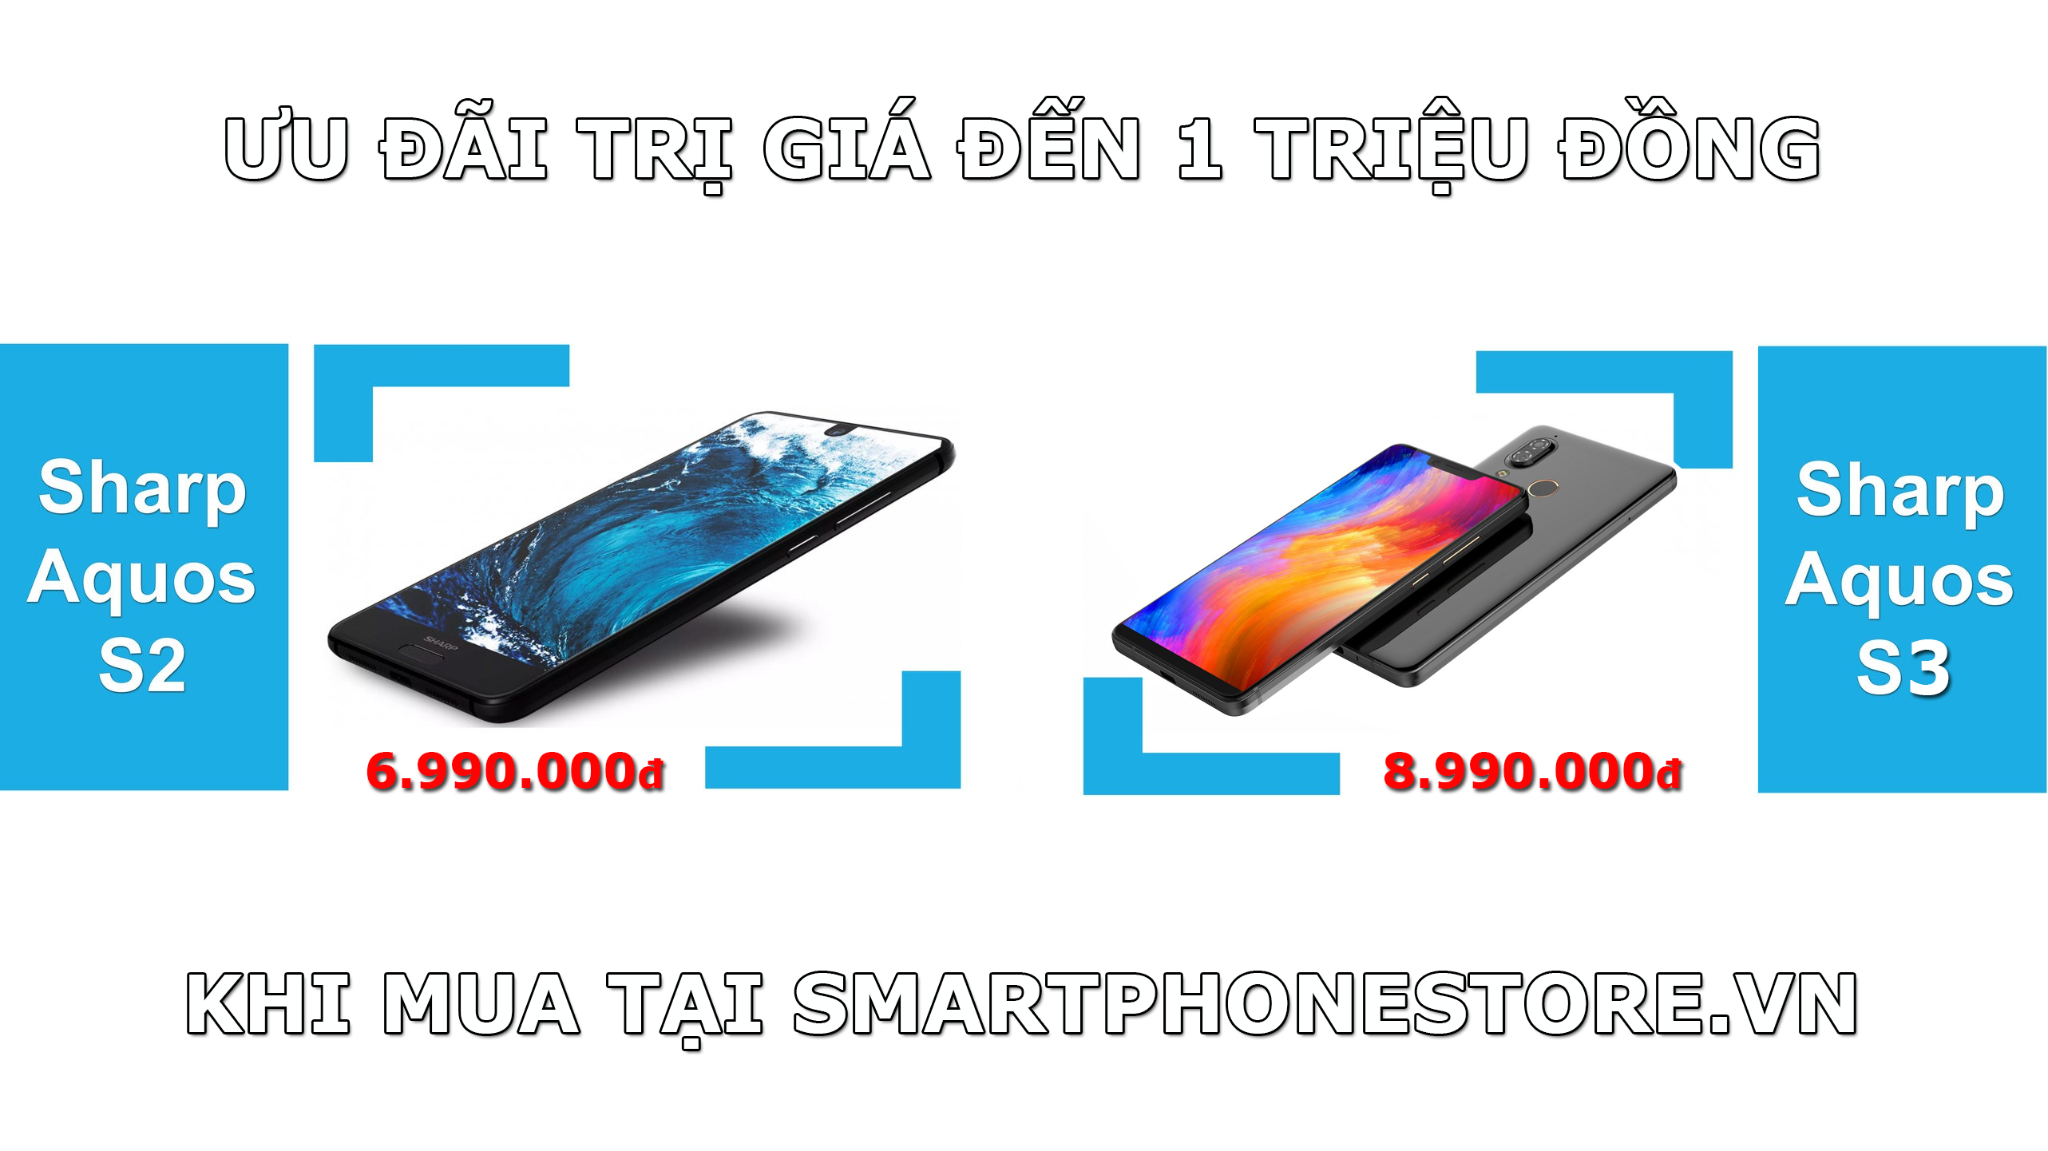 Mua Sharp Aquos S2, S3 tại SmartPhoneStore.vn được ưu đãi đến 1 triệu đồng